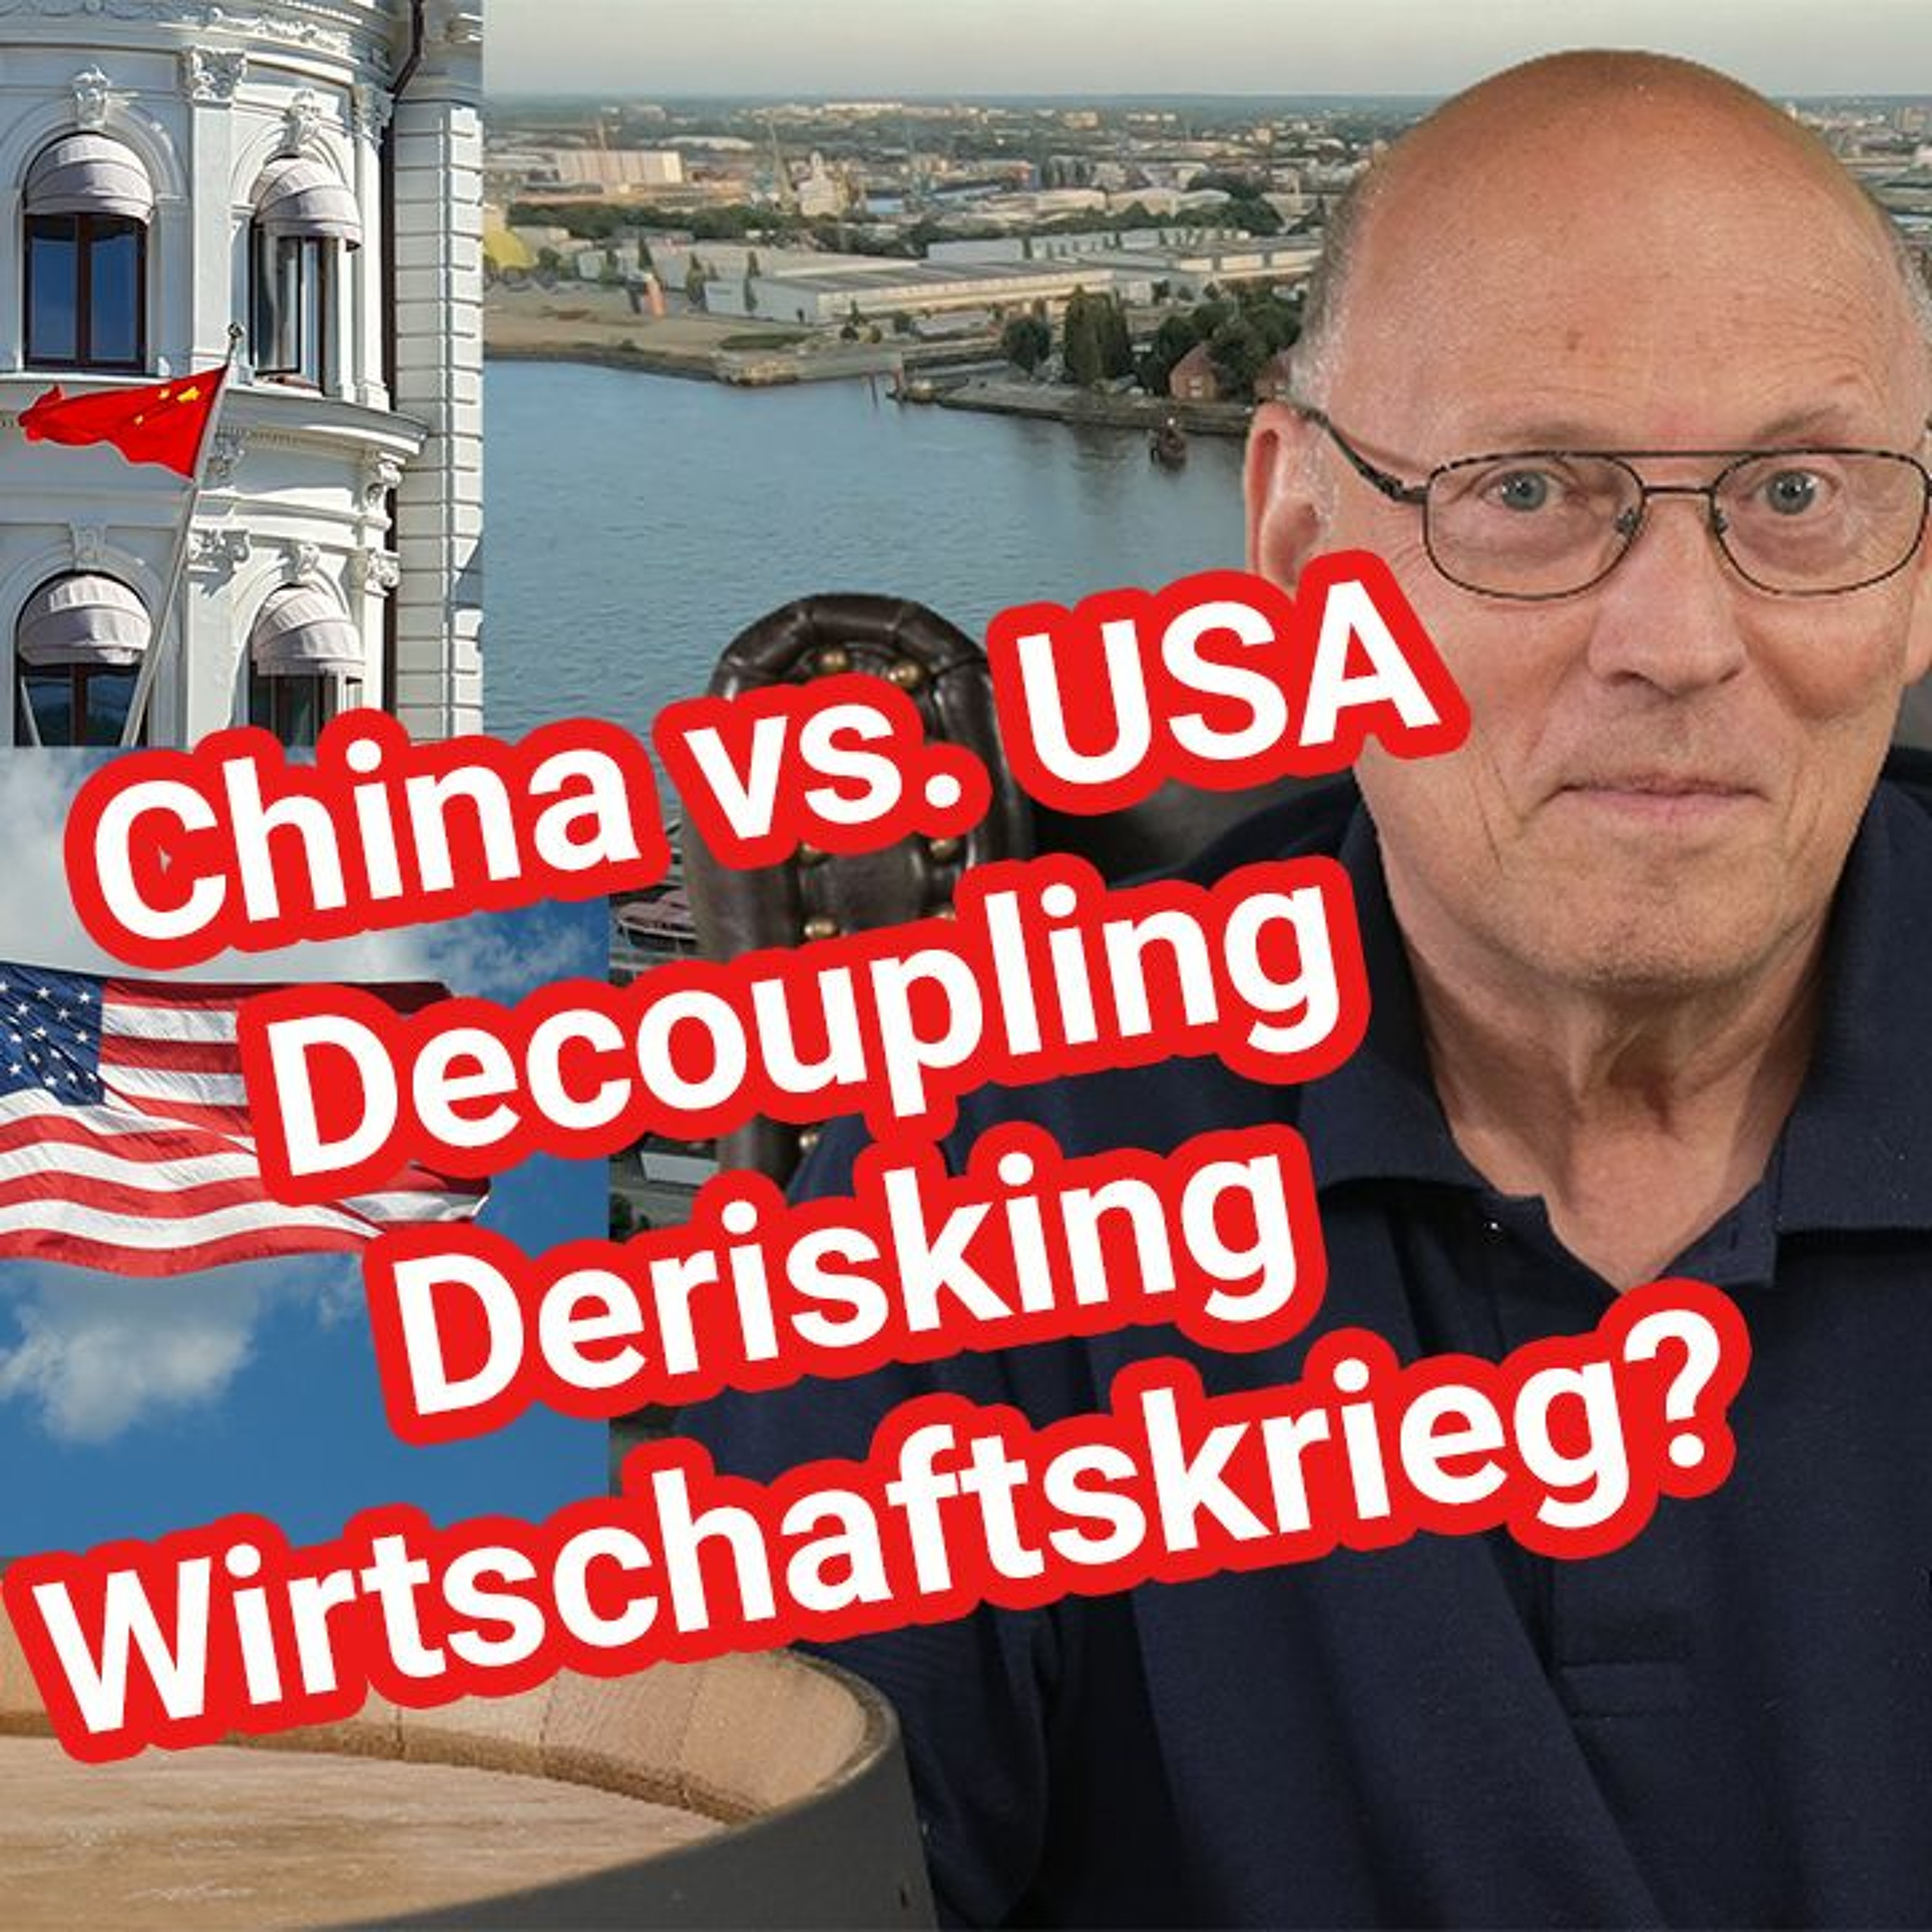 Decoupling, Derisking - Gefahr für Wohlstand und Politik - USA vs. China, Große Depression, Autarkie